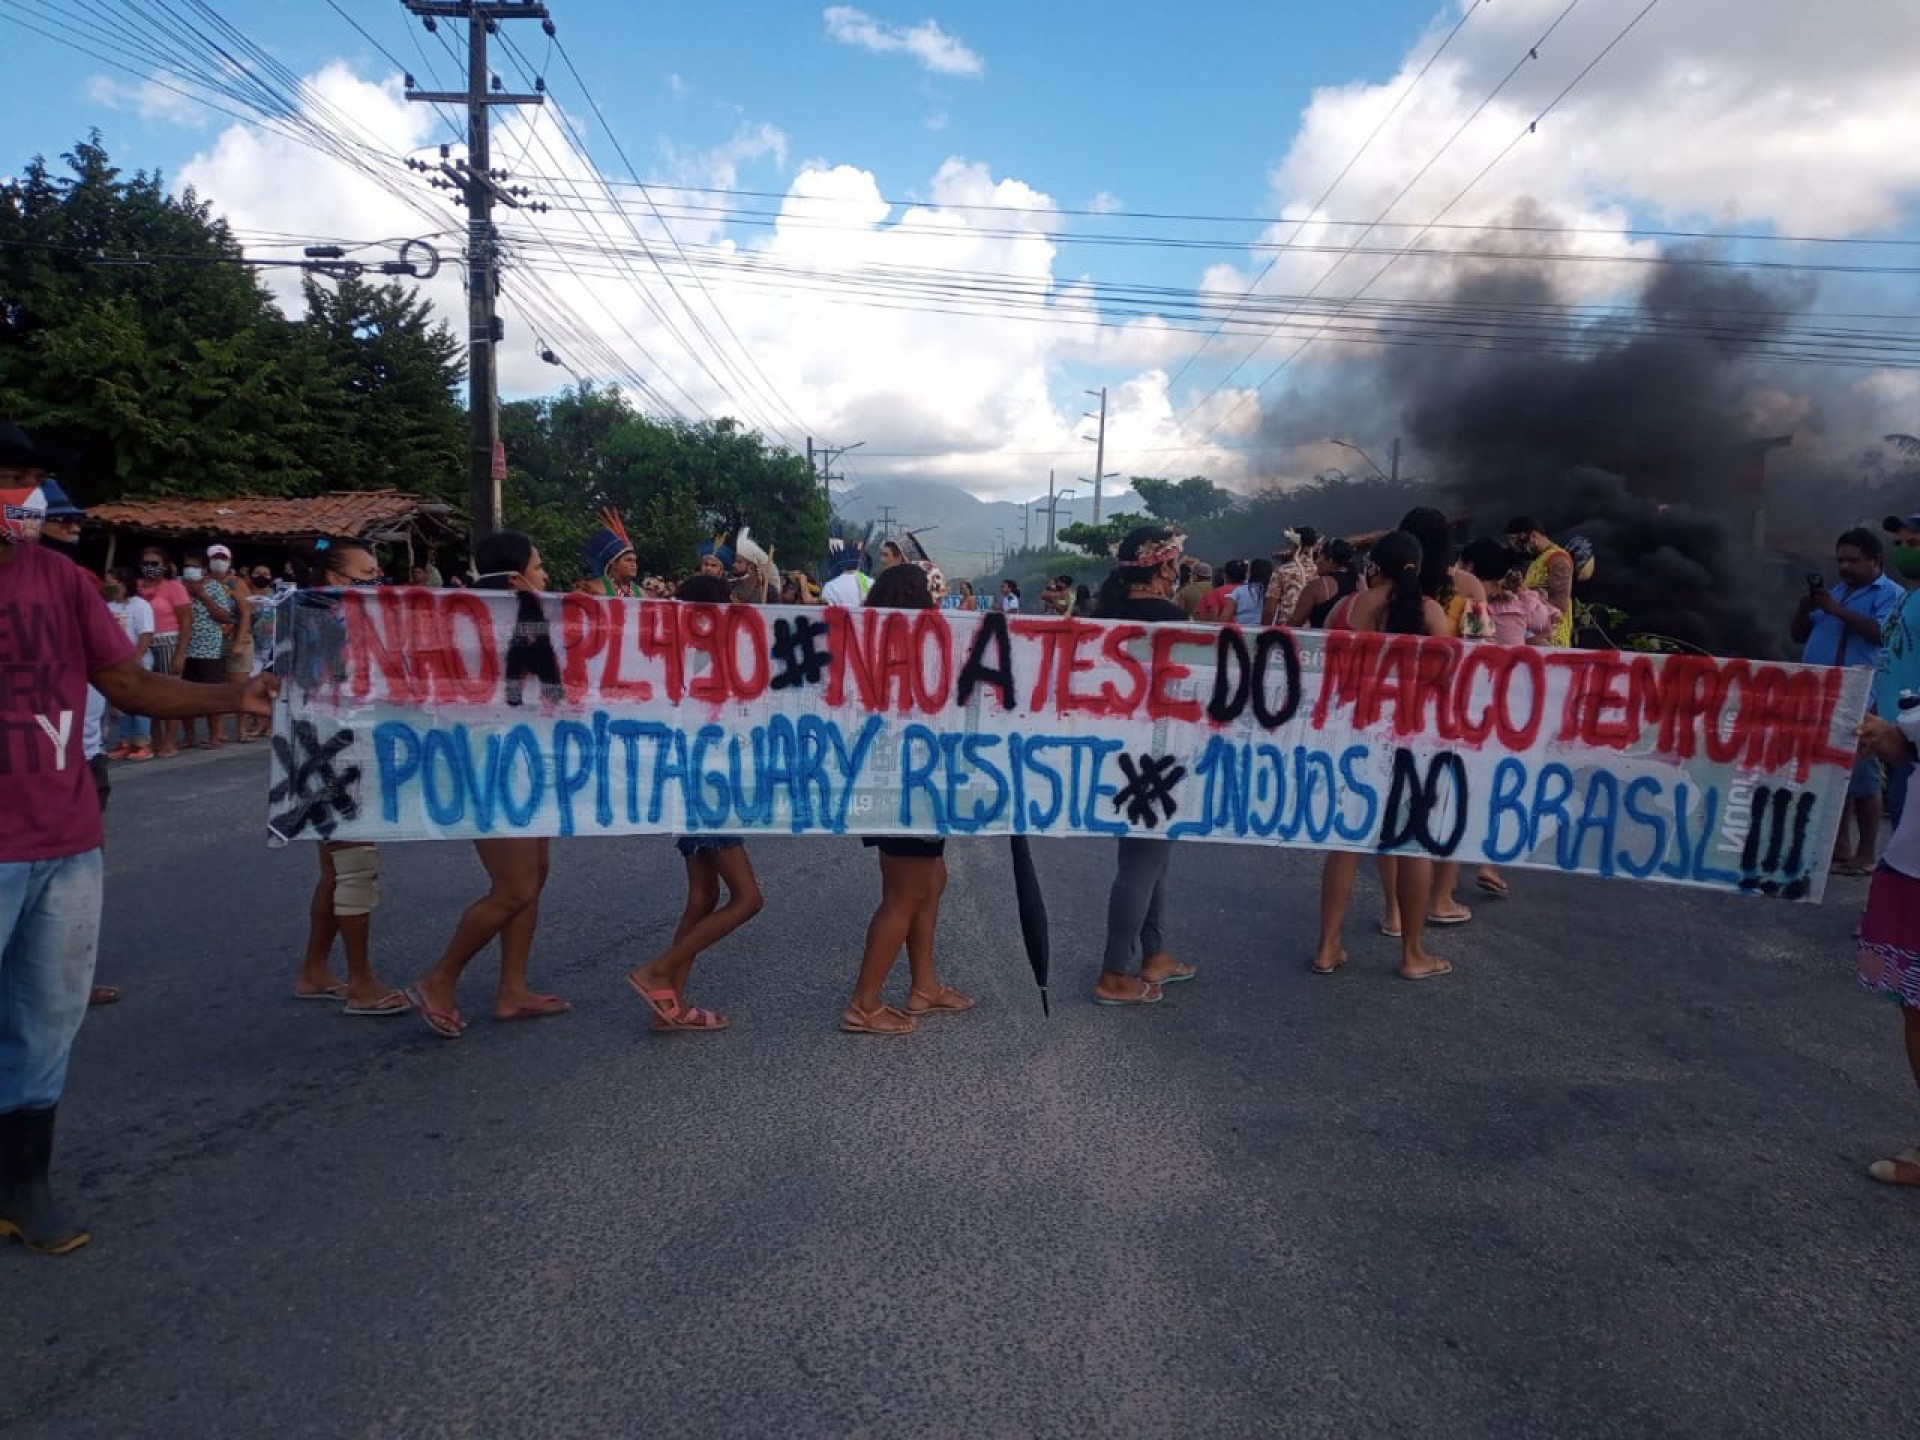 Povo Pitaguary protesta contra PL 490 e tese do marco temporal  (Foto: Divulgação/Oprince)